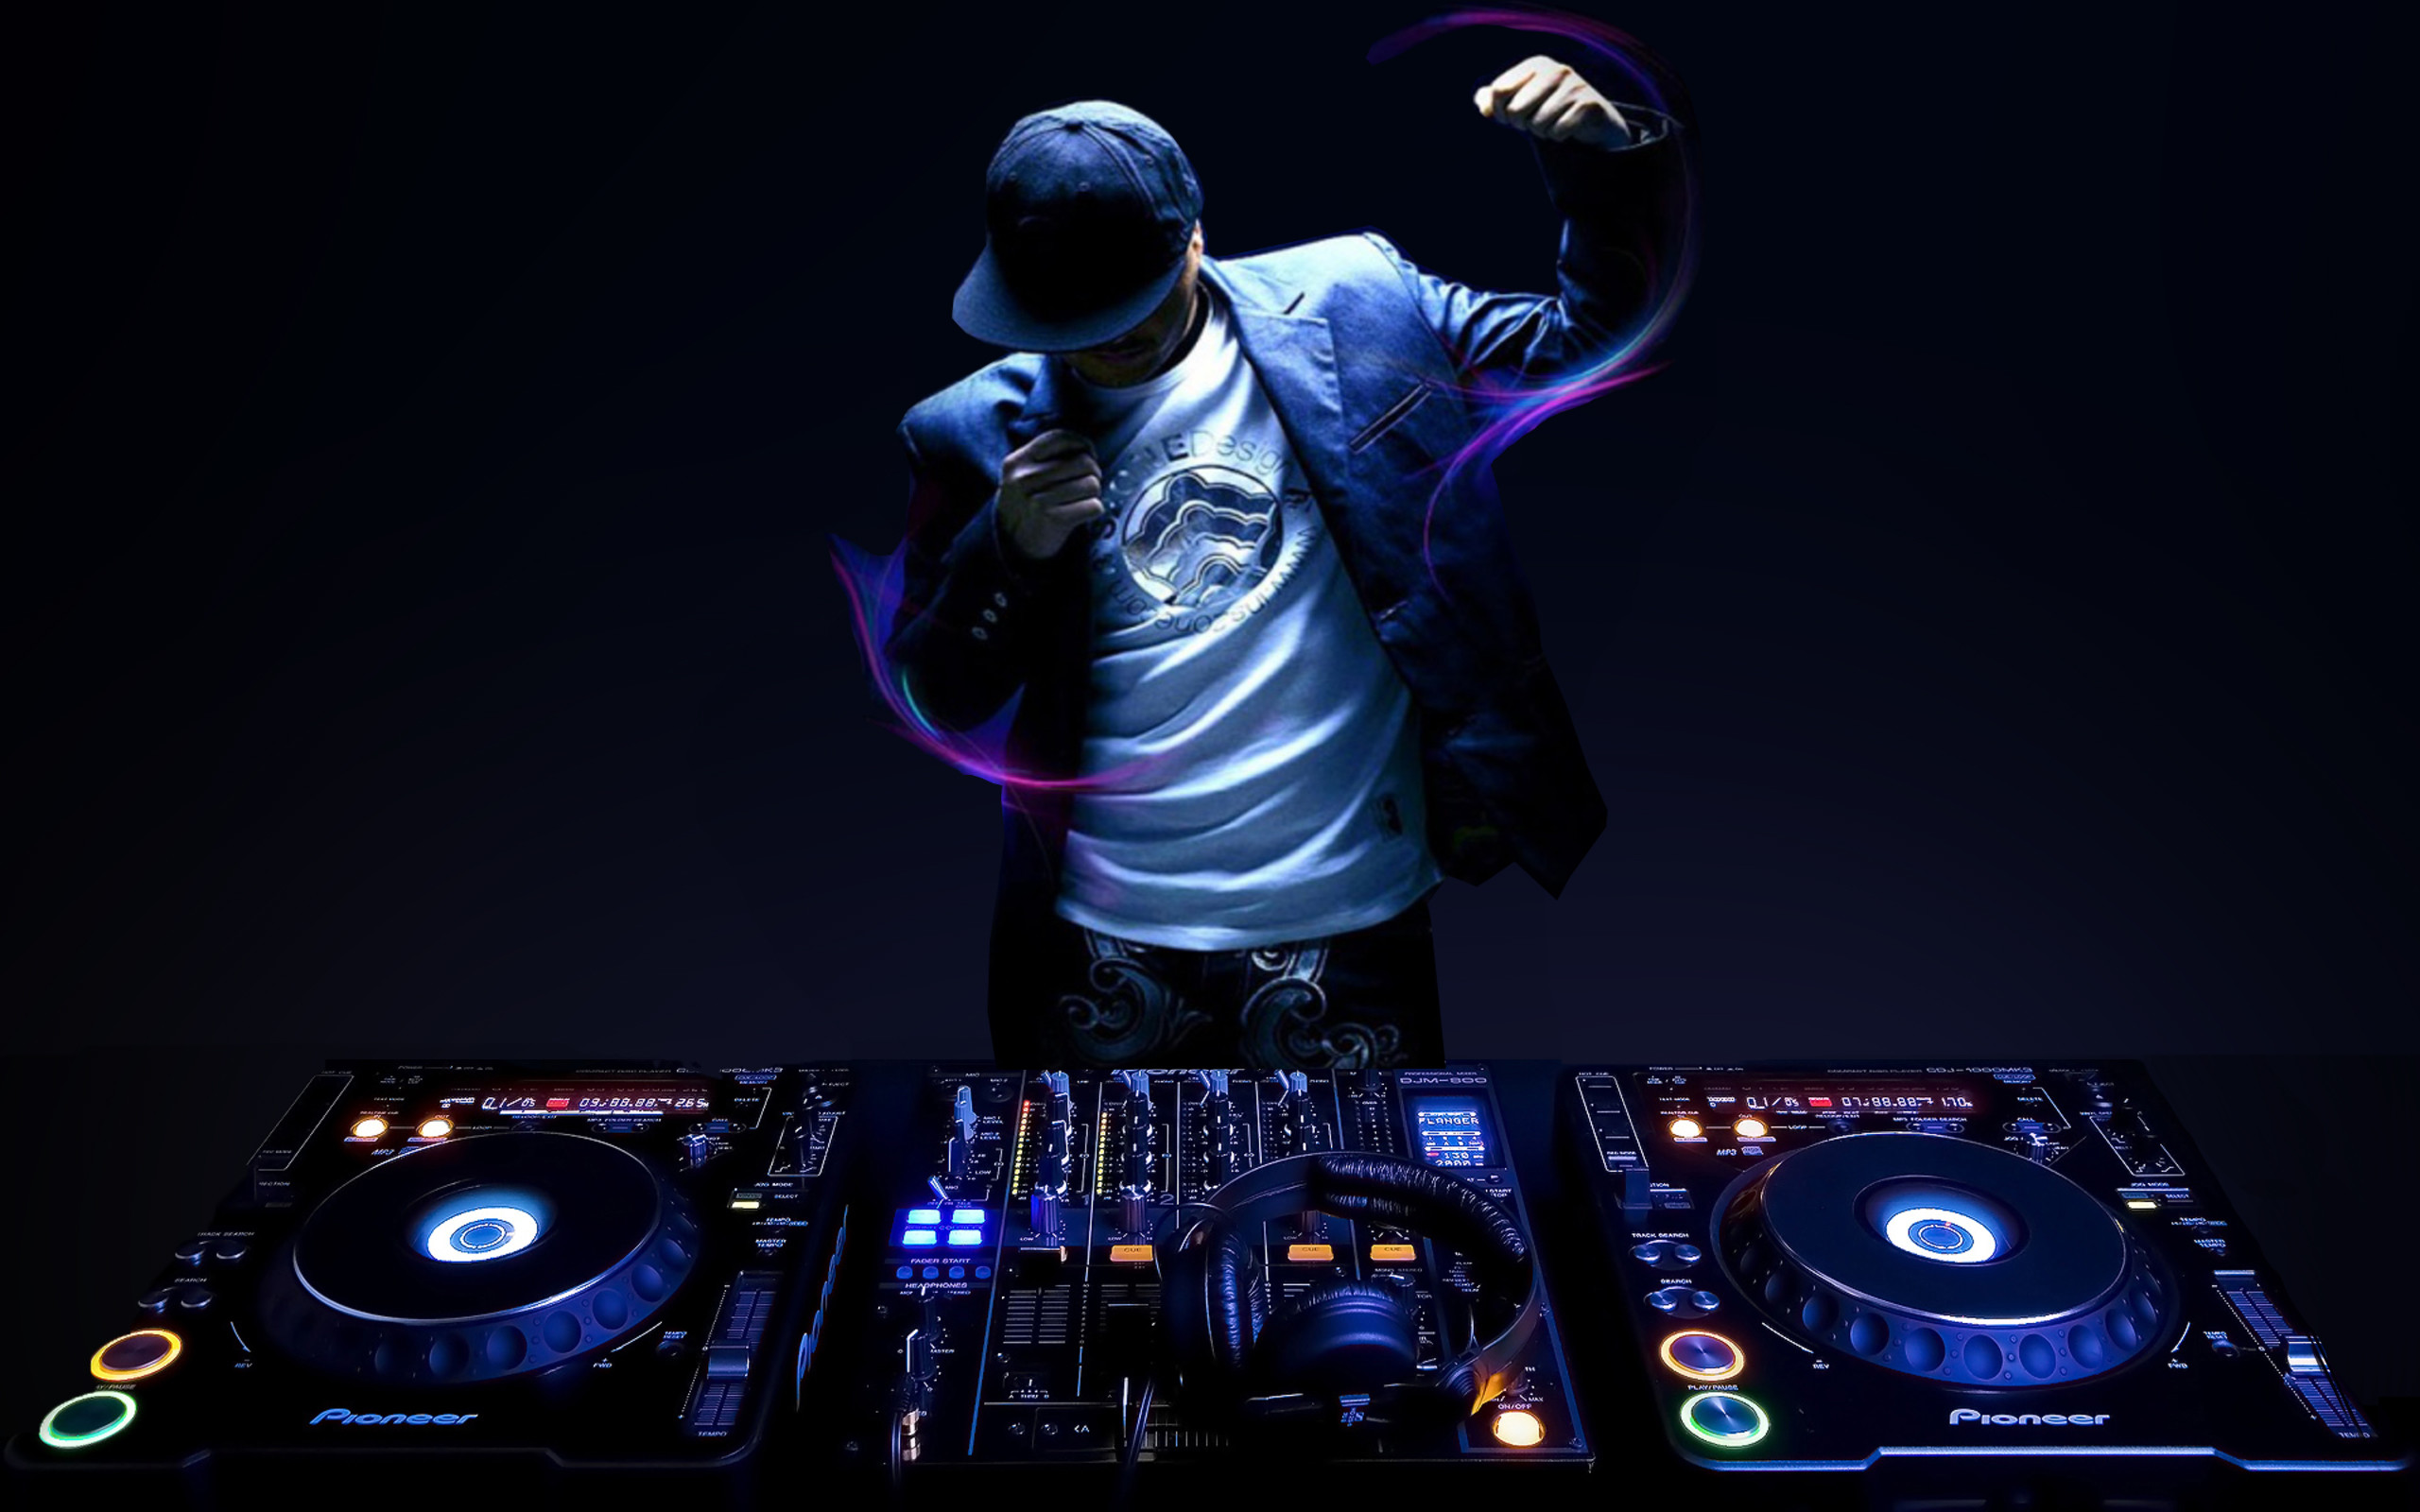 2560x1600 DJ Music Wallpaper Free Download Image.